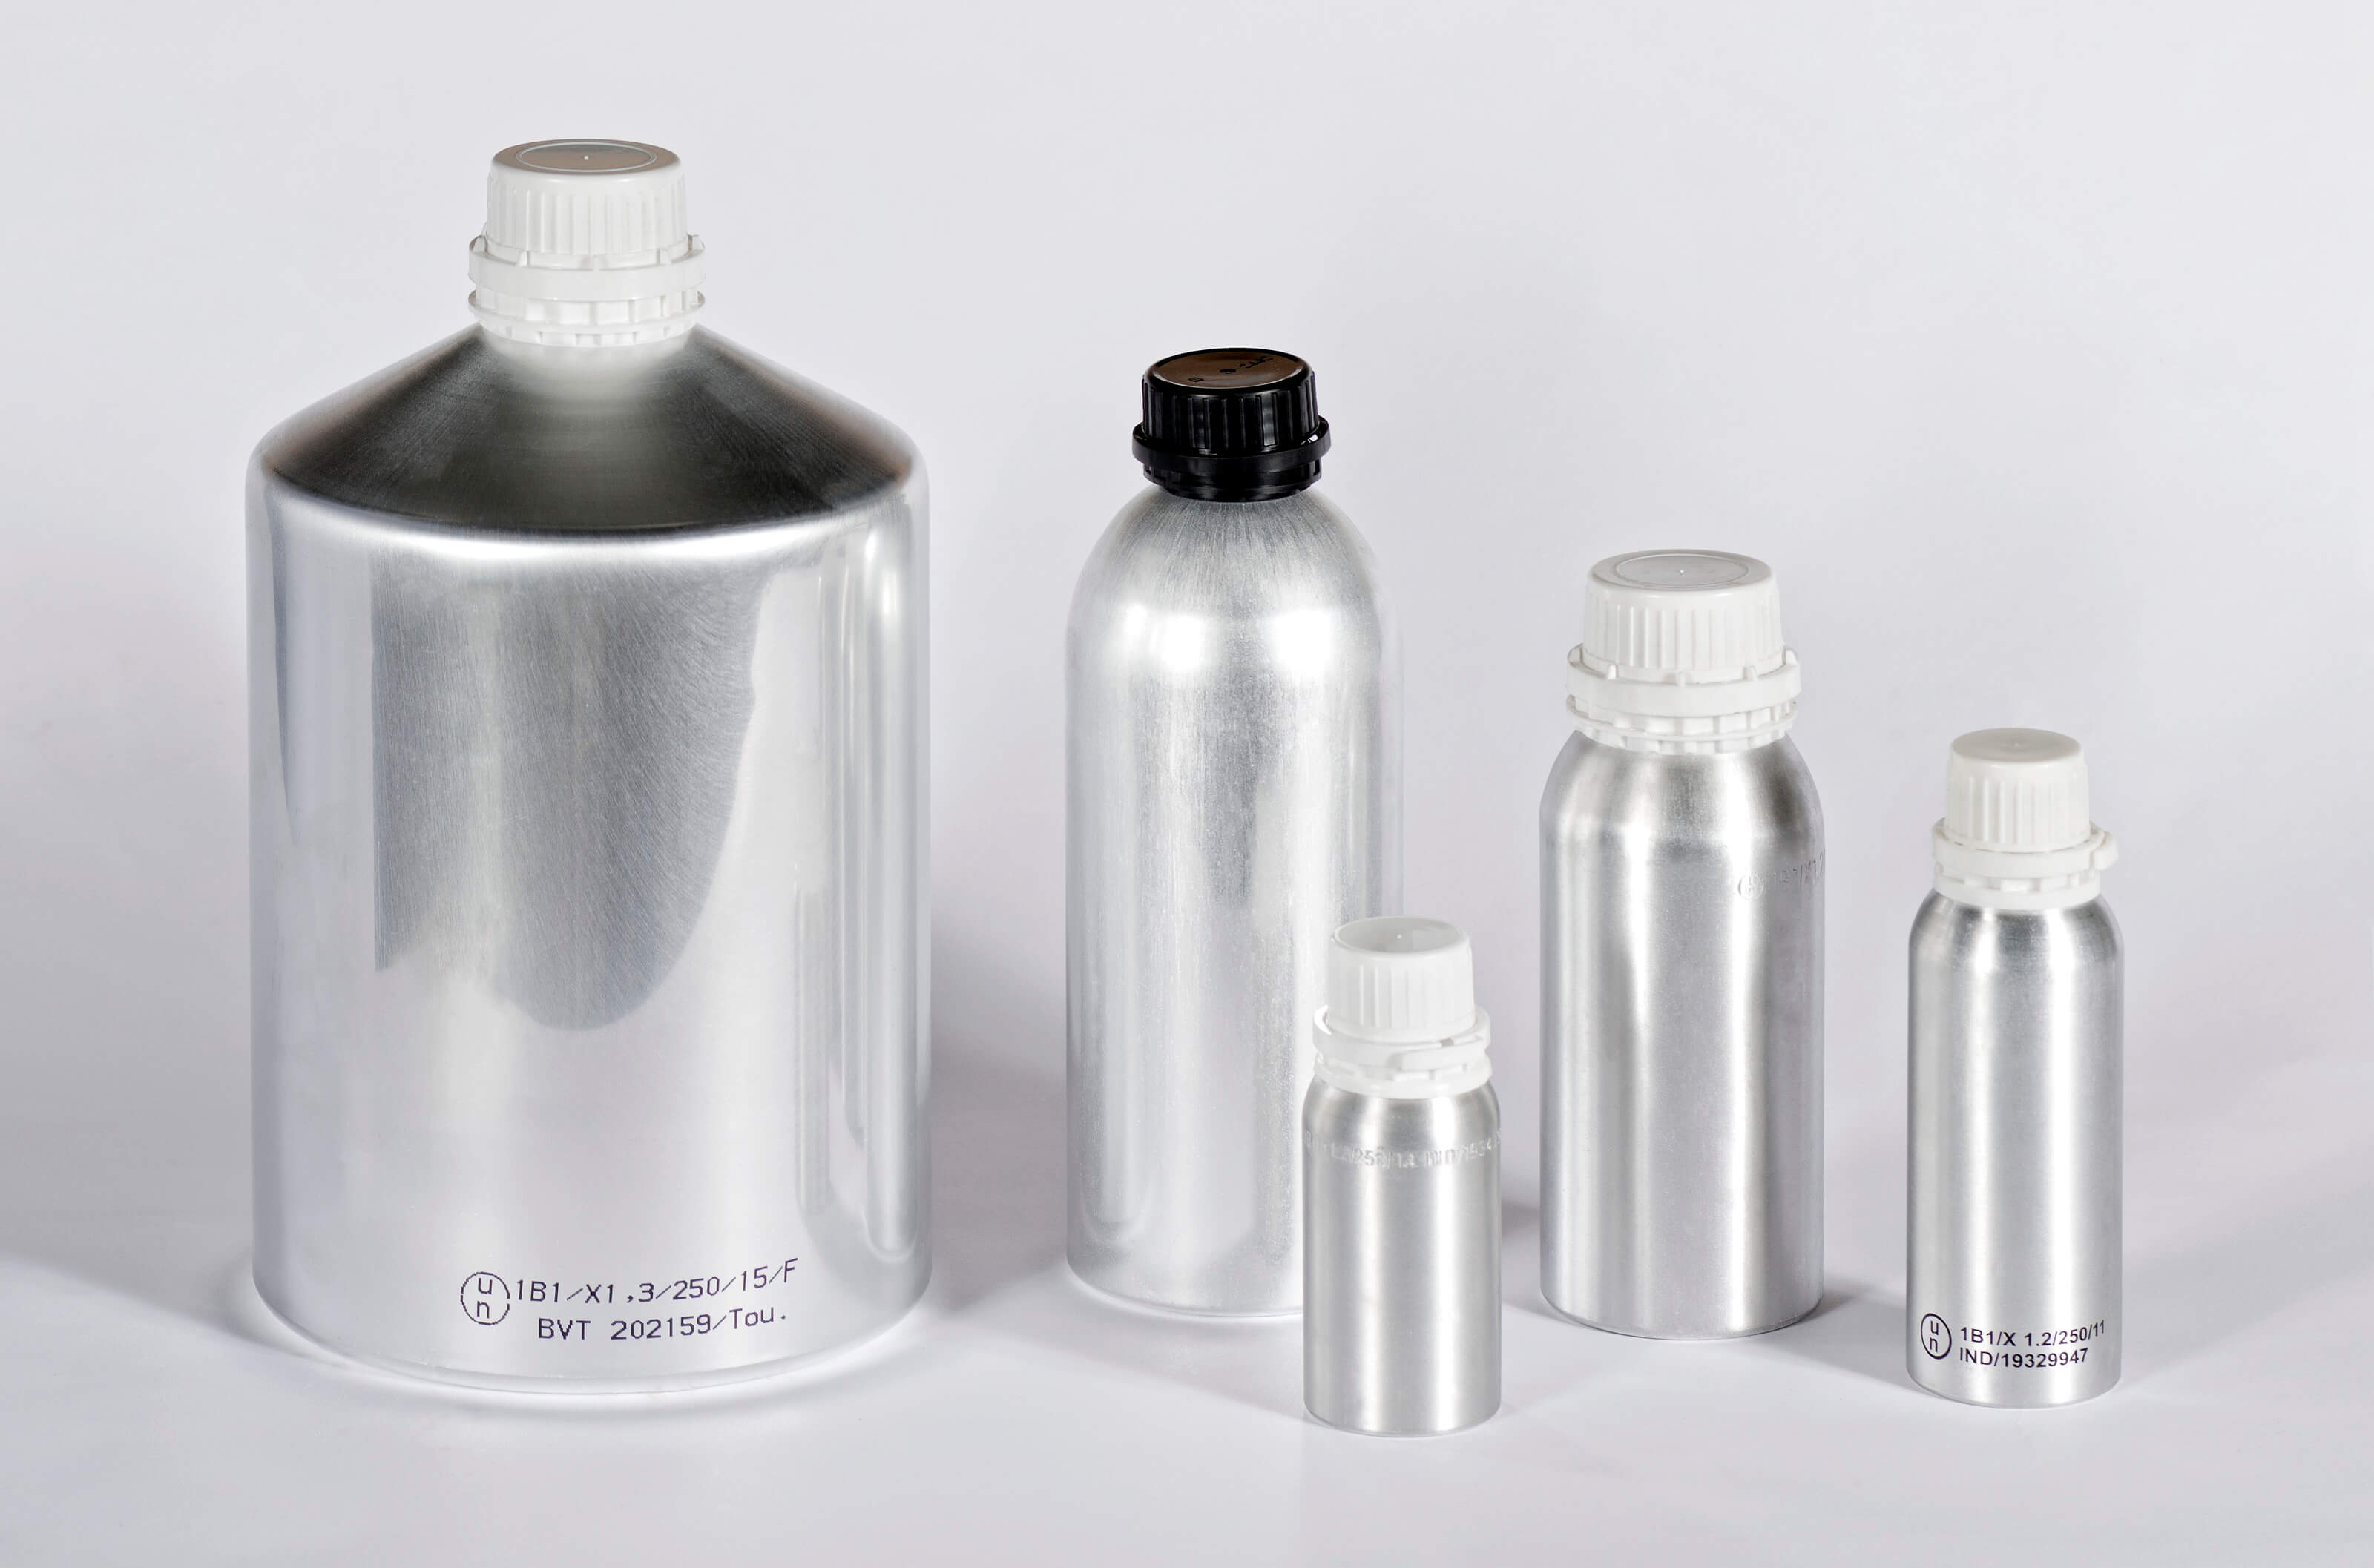 Botellas Aluminio, Envases, Productos